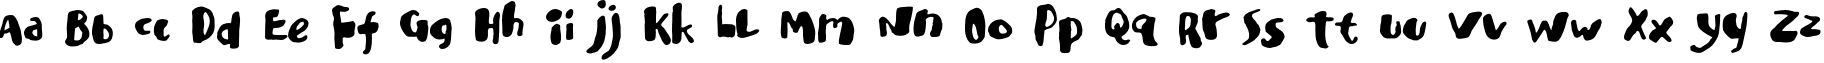 Пример написания английского алфавита шрифтом Ladybug